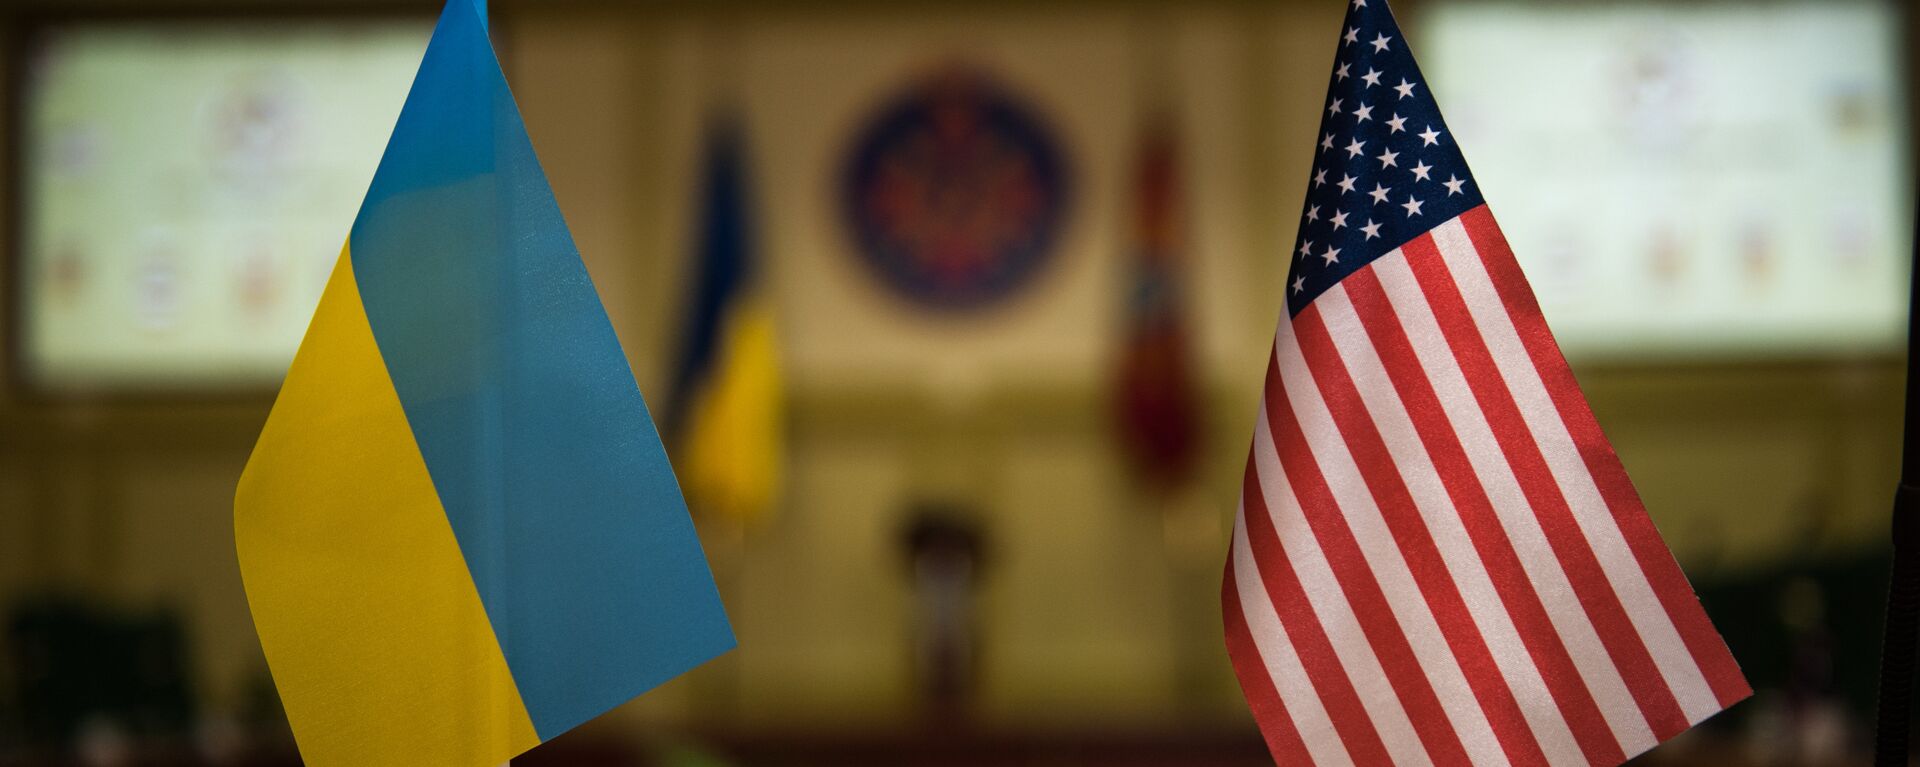 Banderas Ucrania y EEUU - Sputnik Mundo, 1920, 20.02.2021